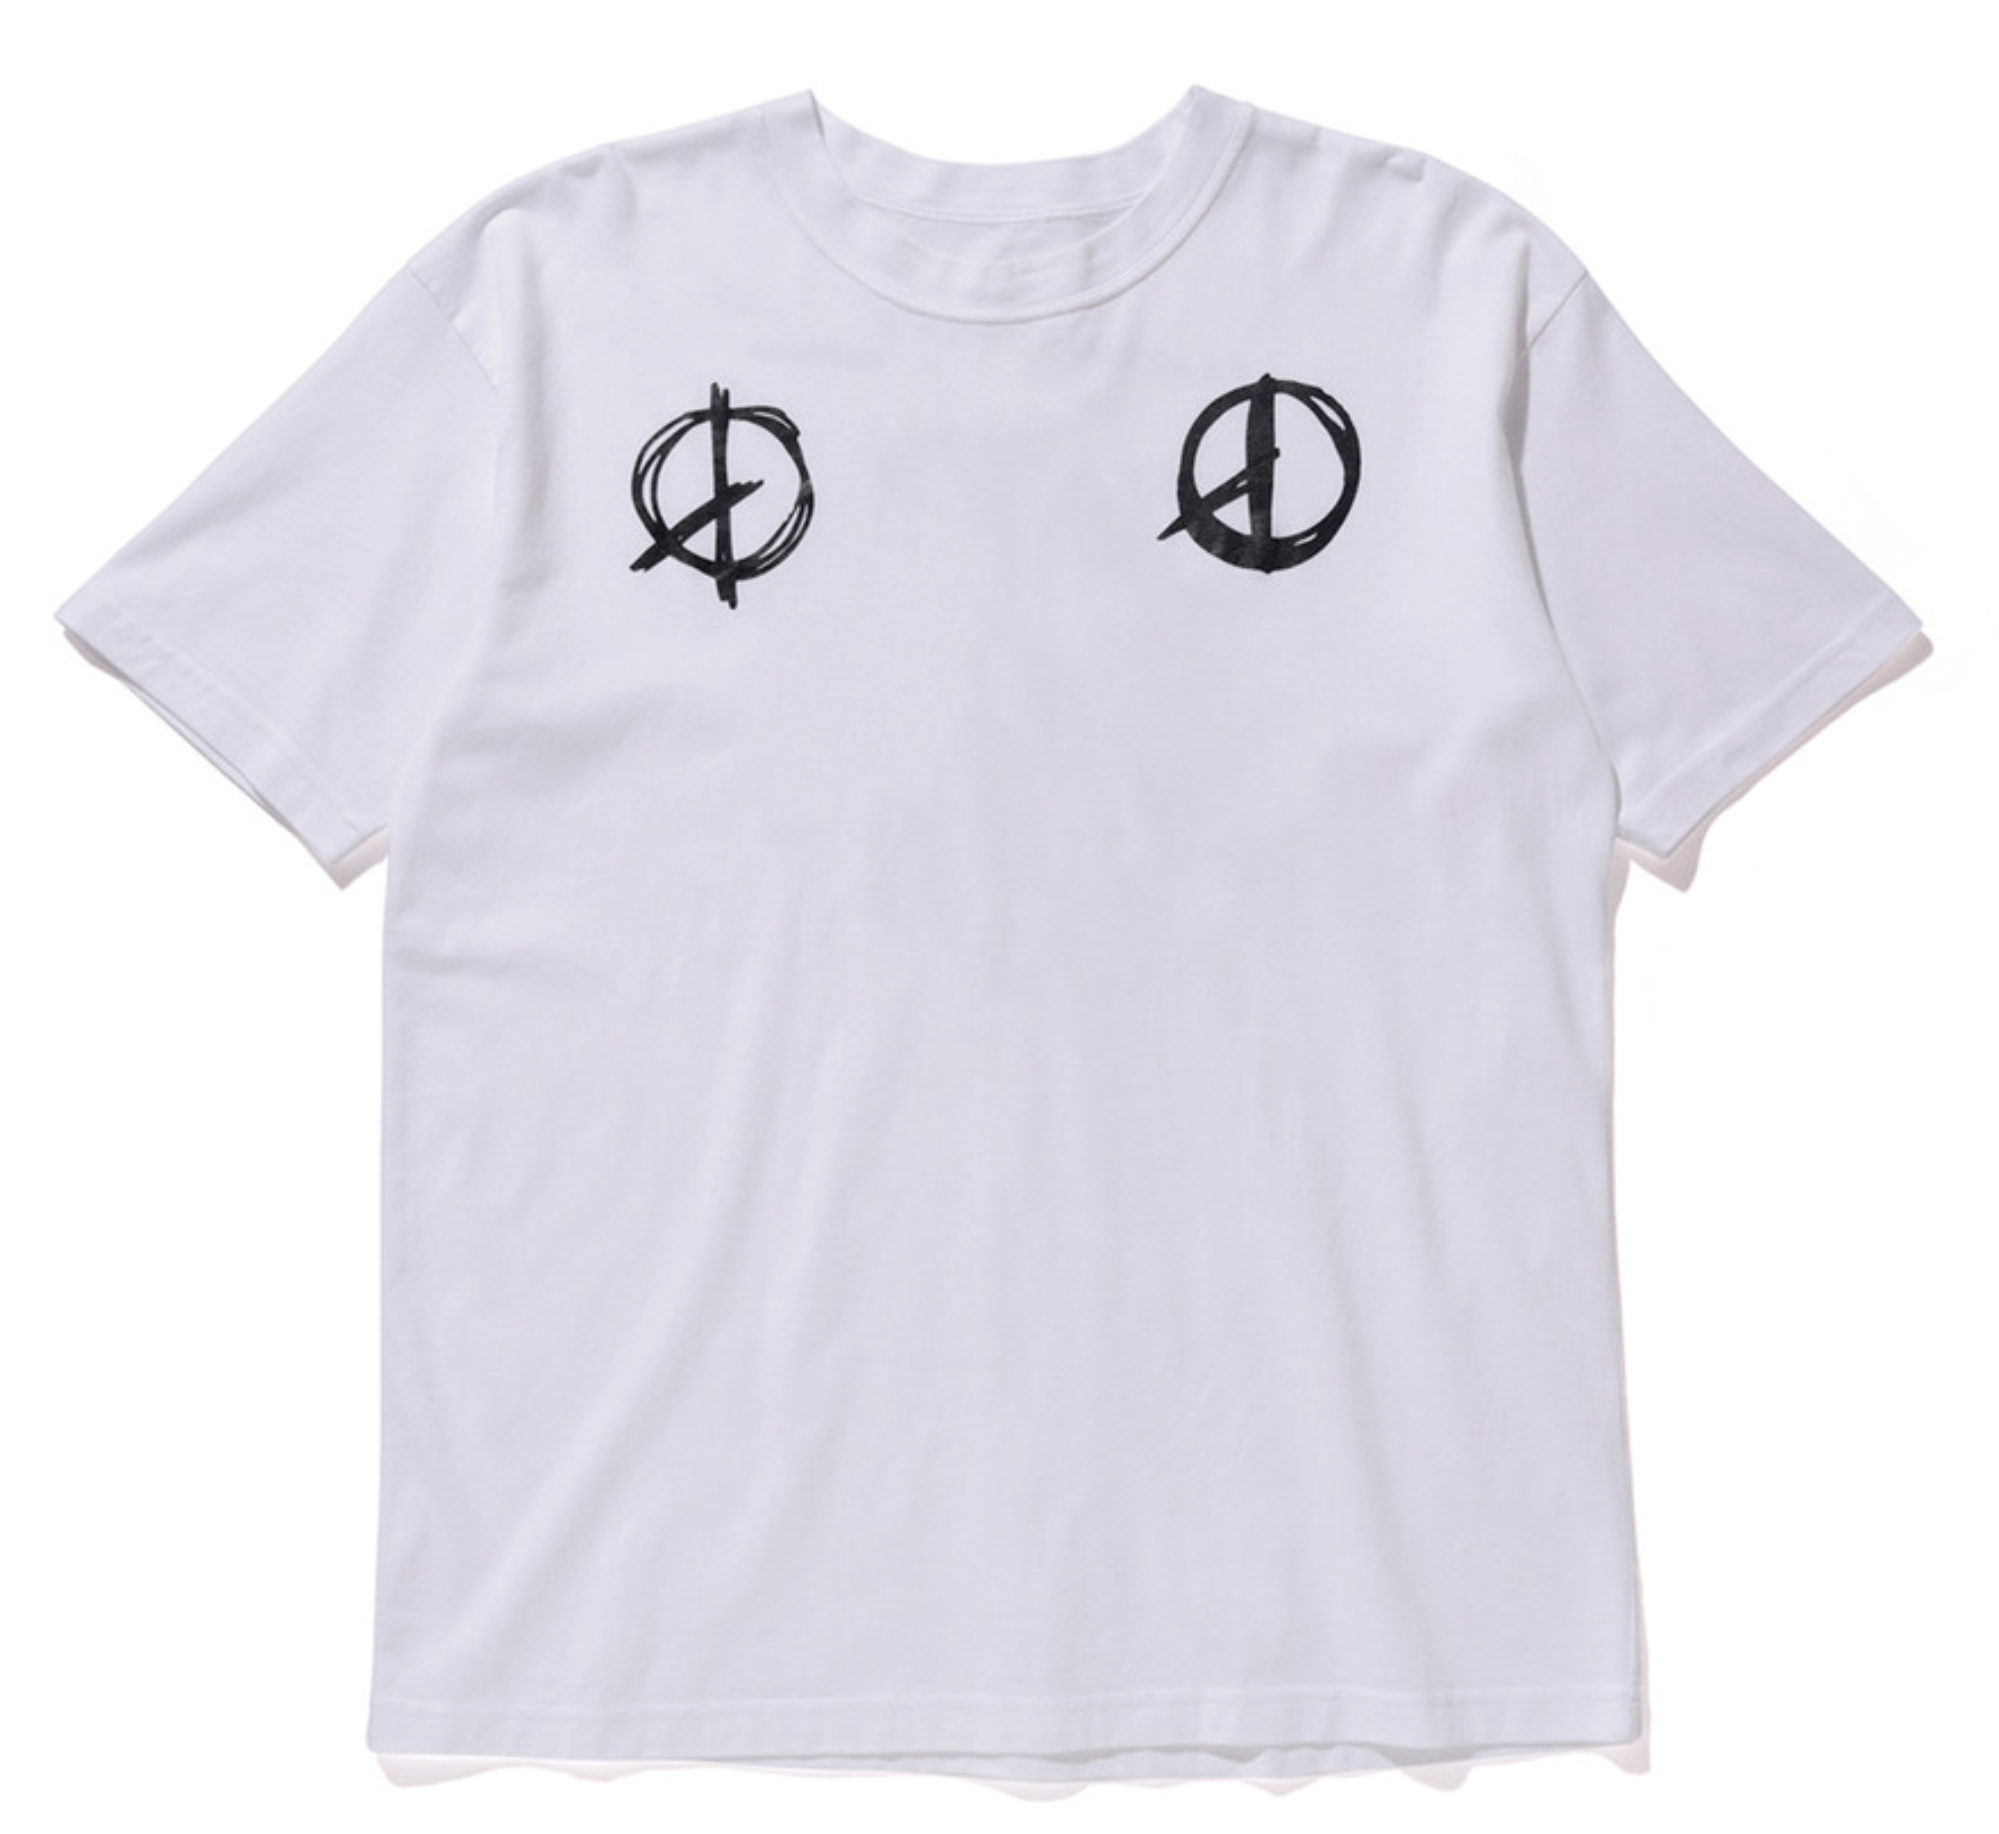 2016 - PEACEMINUSONE x Ambush - T-shirt - White — my BIGBANG collection